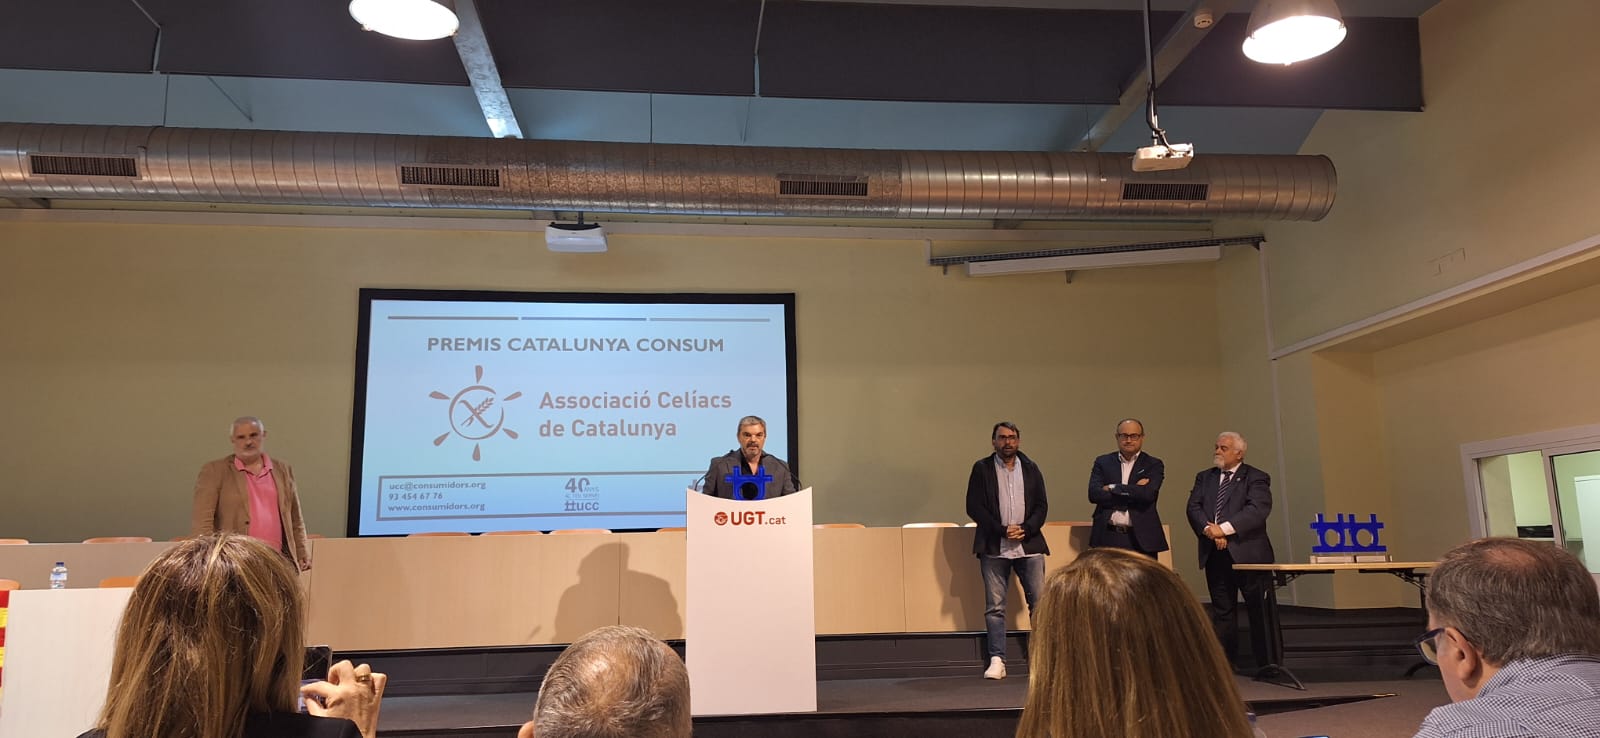 Recibimos el "Premi Catalunya Consum" 